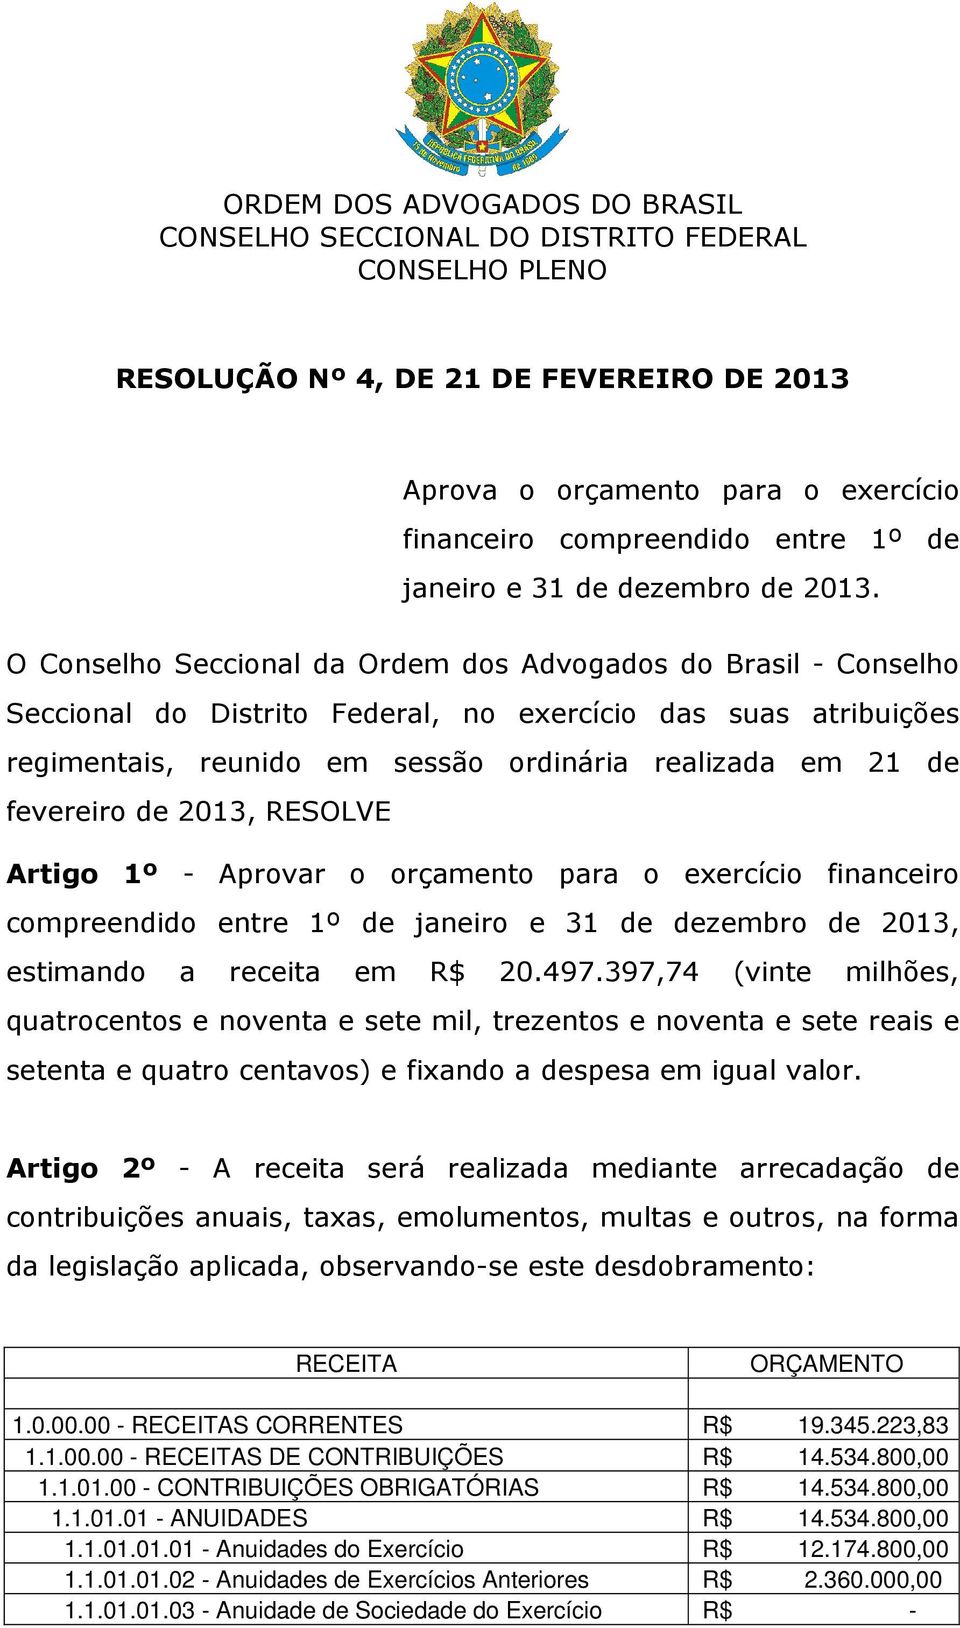 O Conselho Seccional da Ordem dos Advogados do Brasil - Conselho Seccional do Distrito Federal, no exercício das suas atribuições regimentais, reunido em sessão ordinária realizada em 21 de fevereiro